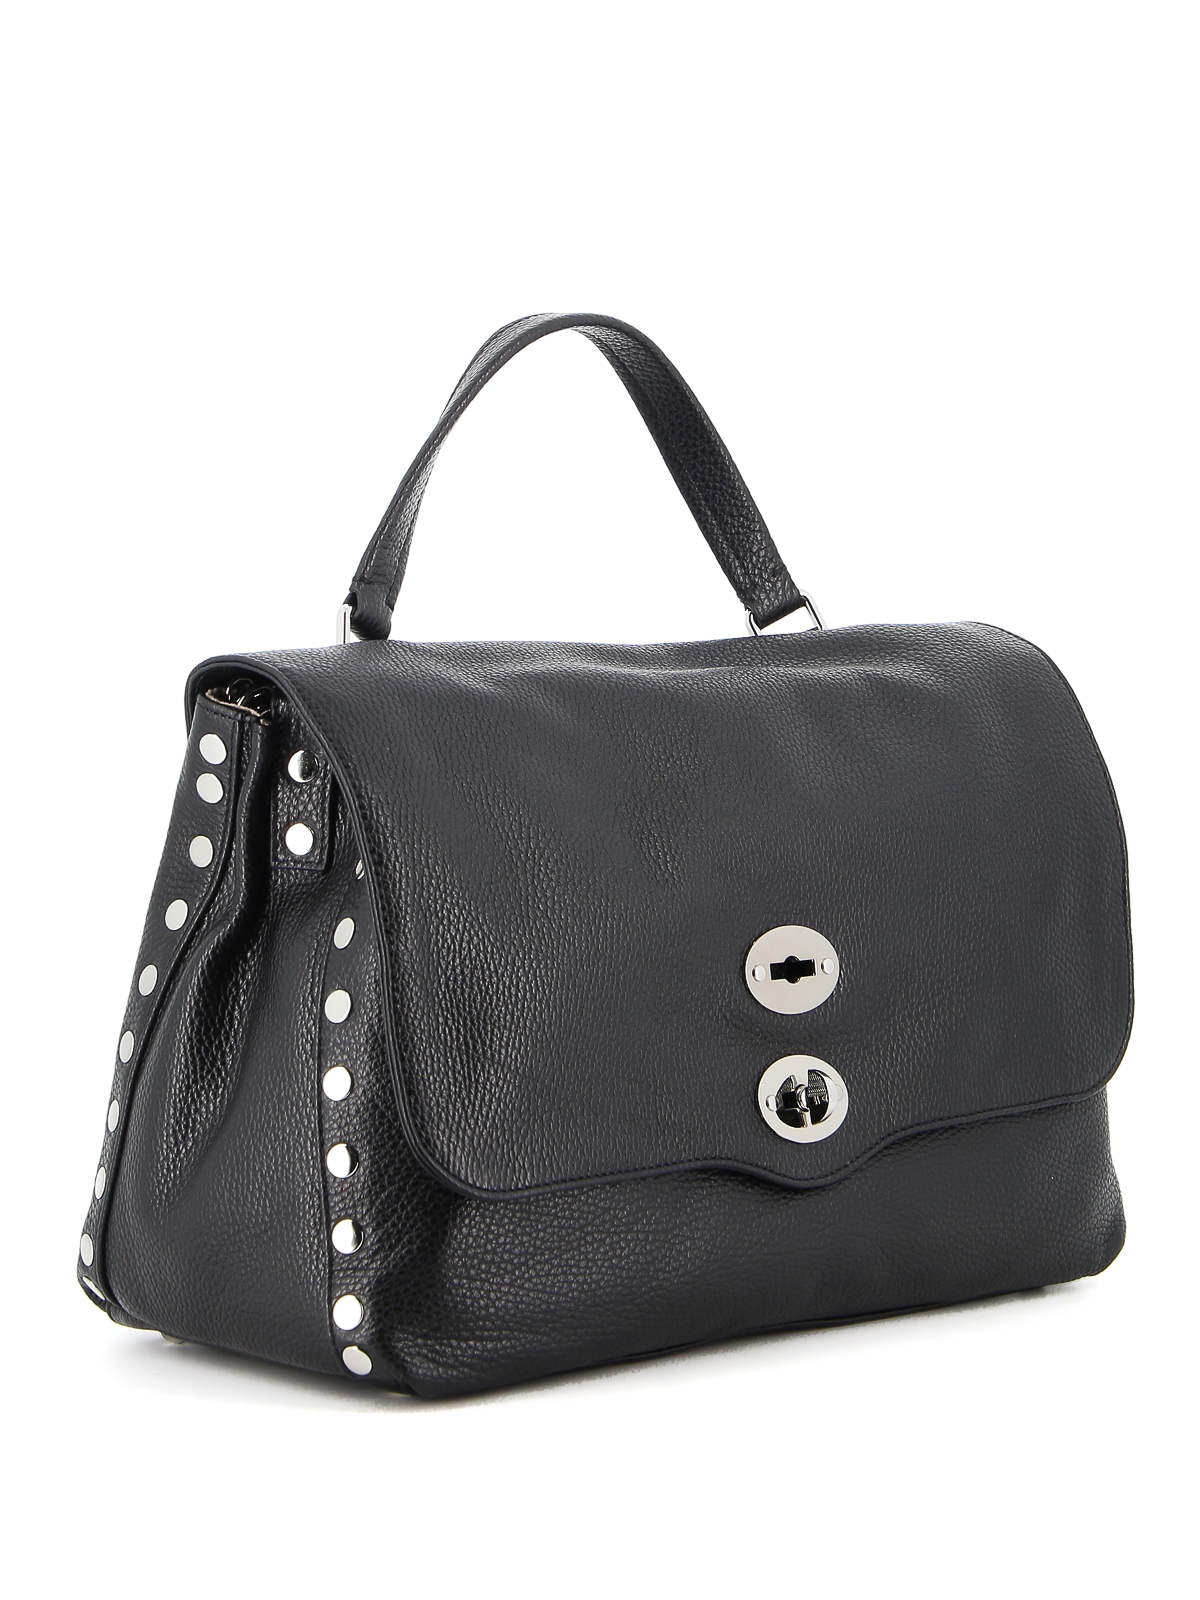 Totes bags Zanellato - Postina M Daily leather bag - ZA00PEL0613118Z0001